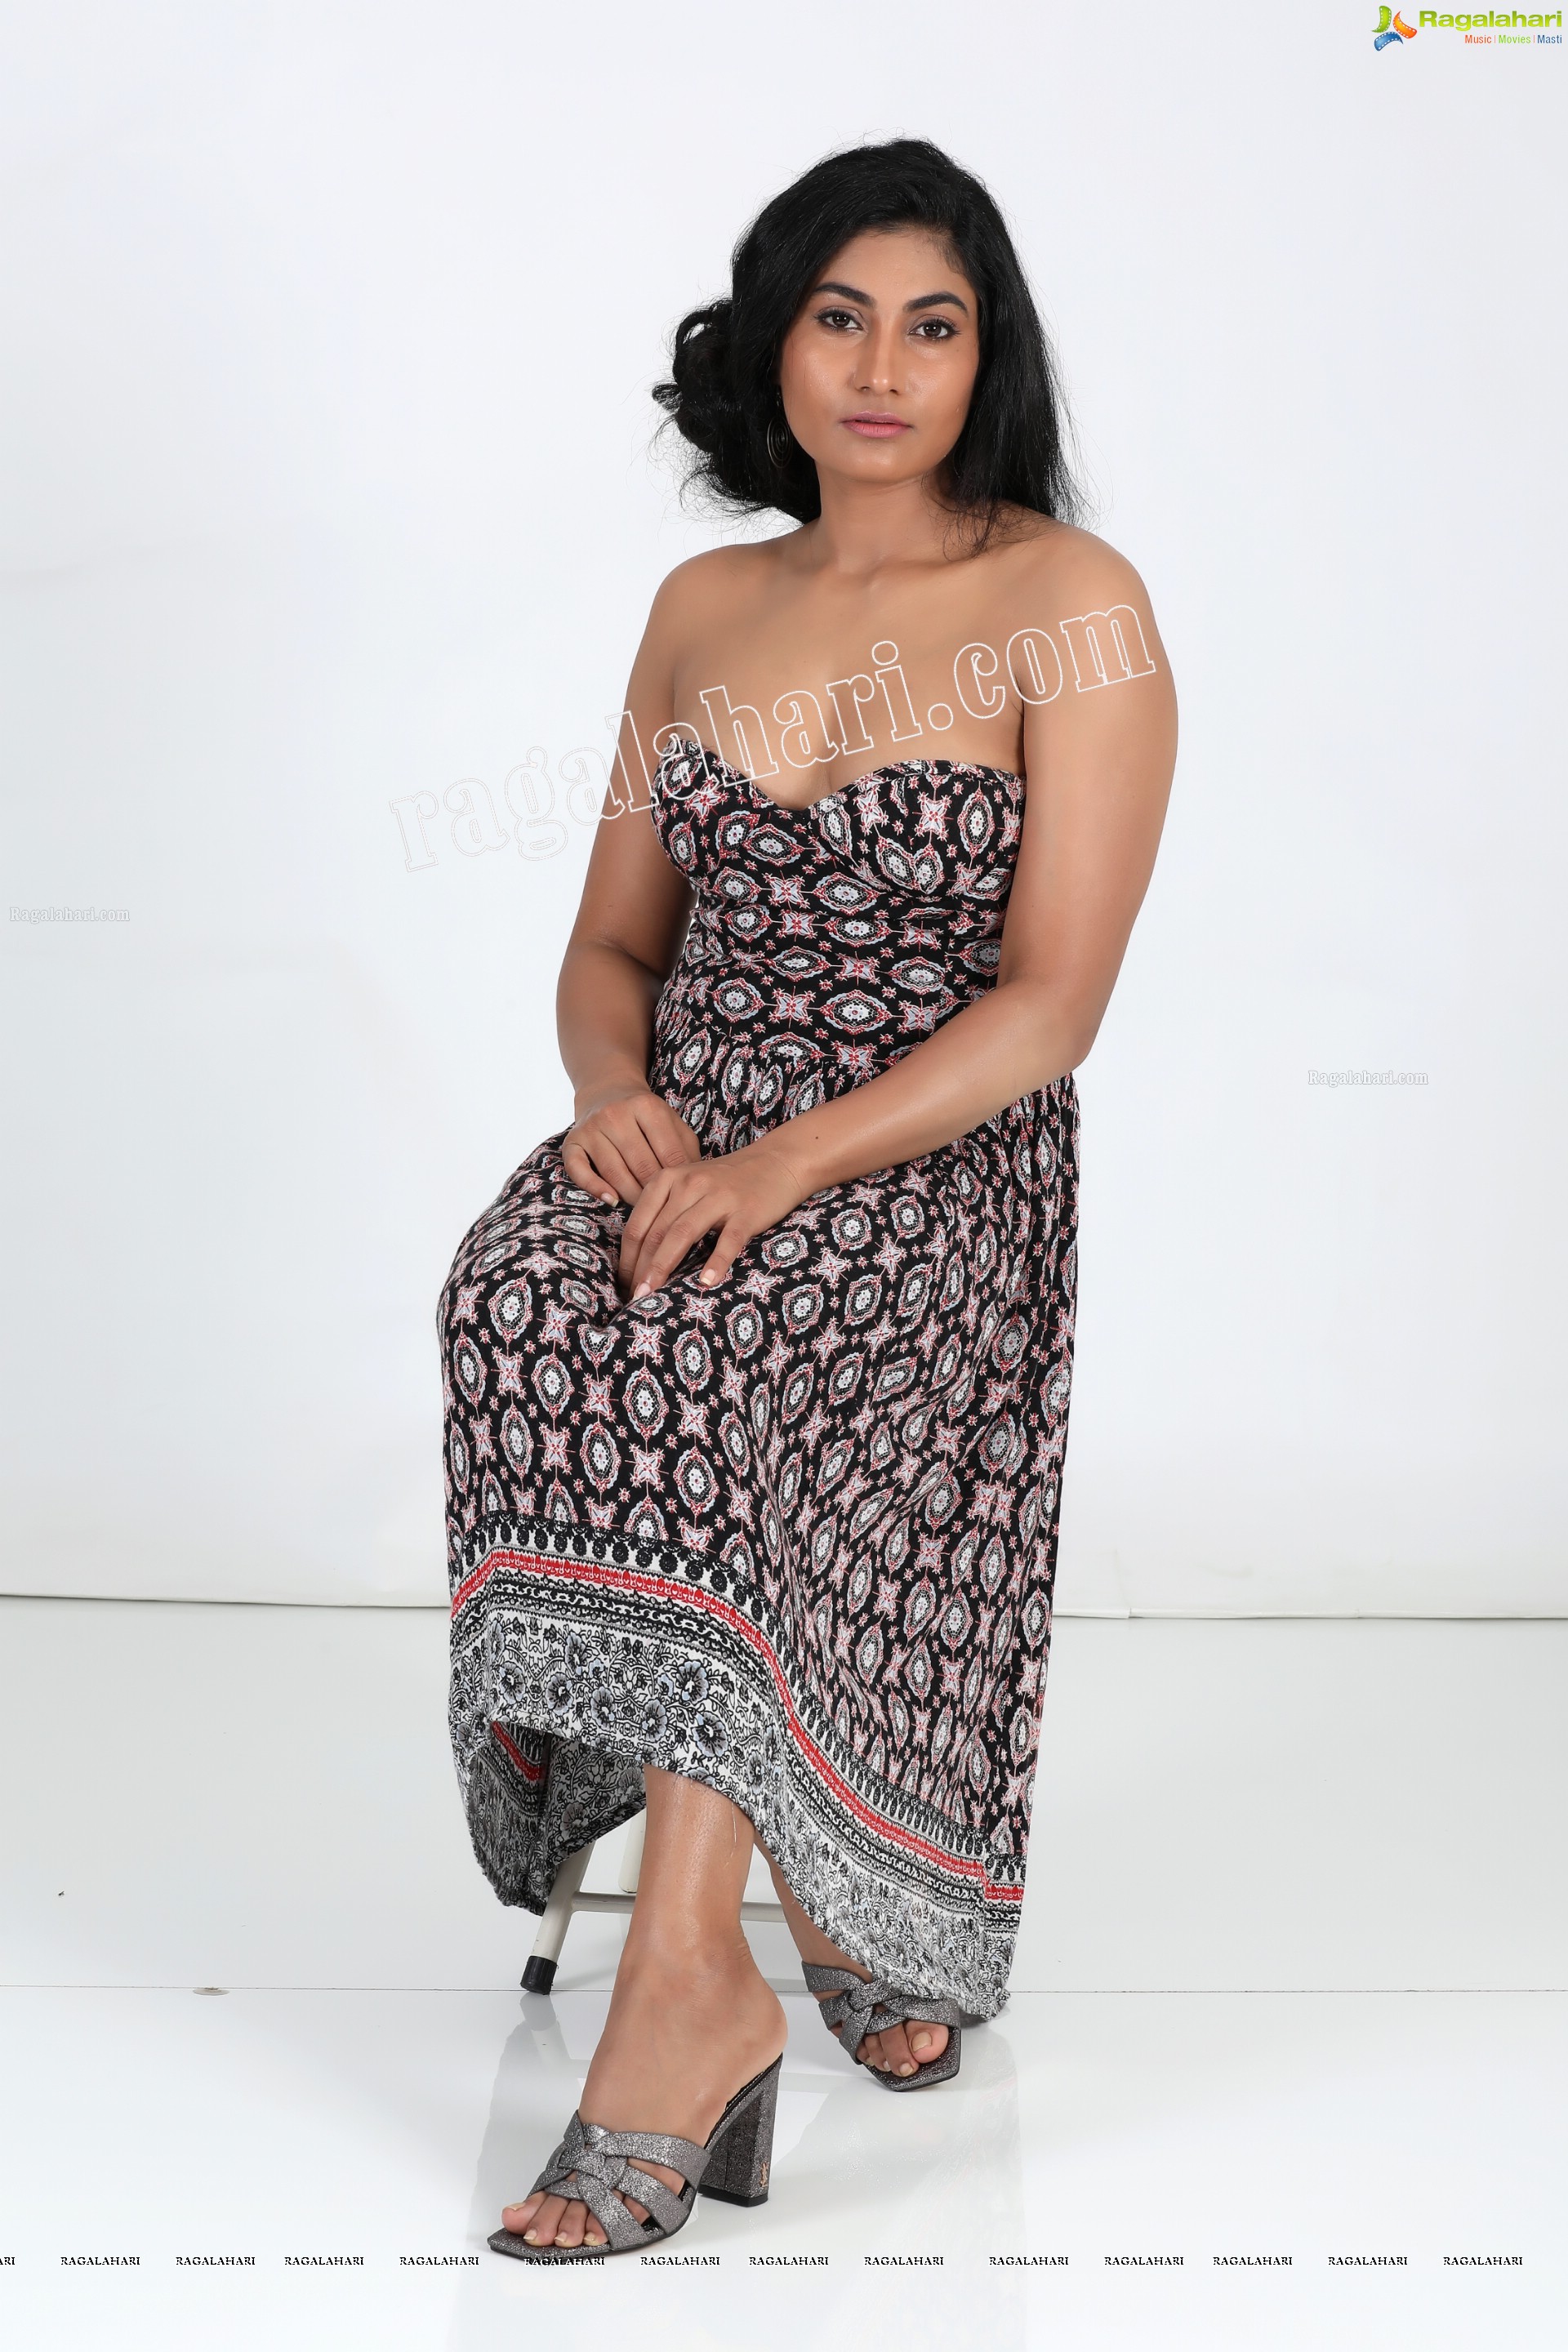 Saafi Kaur in Black Off-Shoulder Tribal Geo Printed Dress Exclusive Photo Shoot